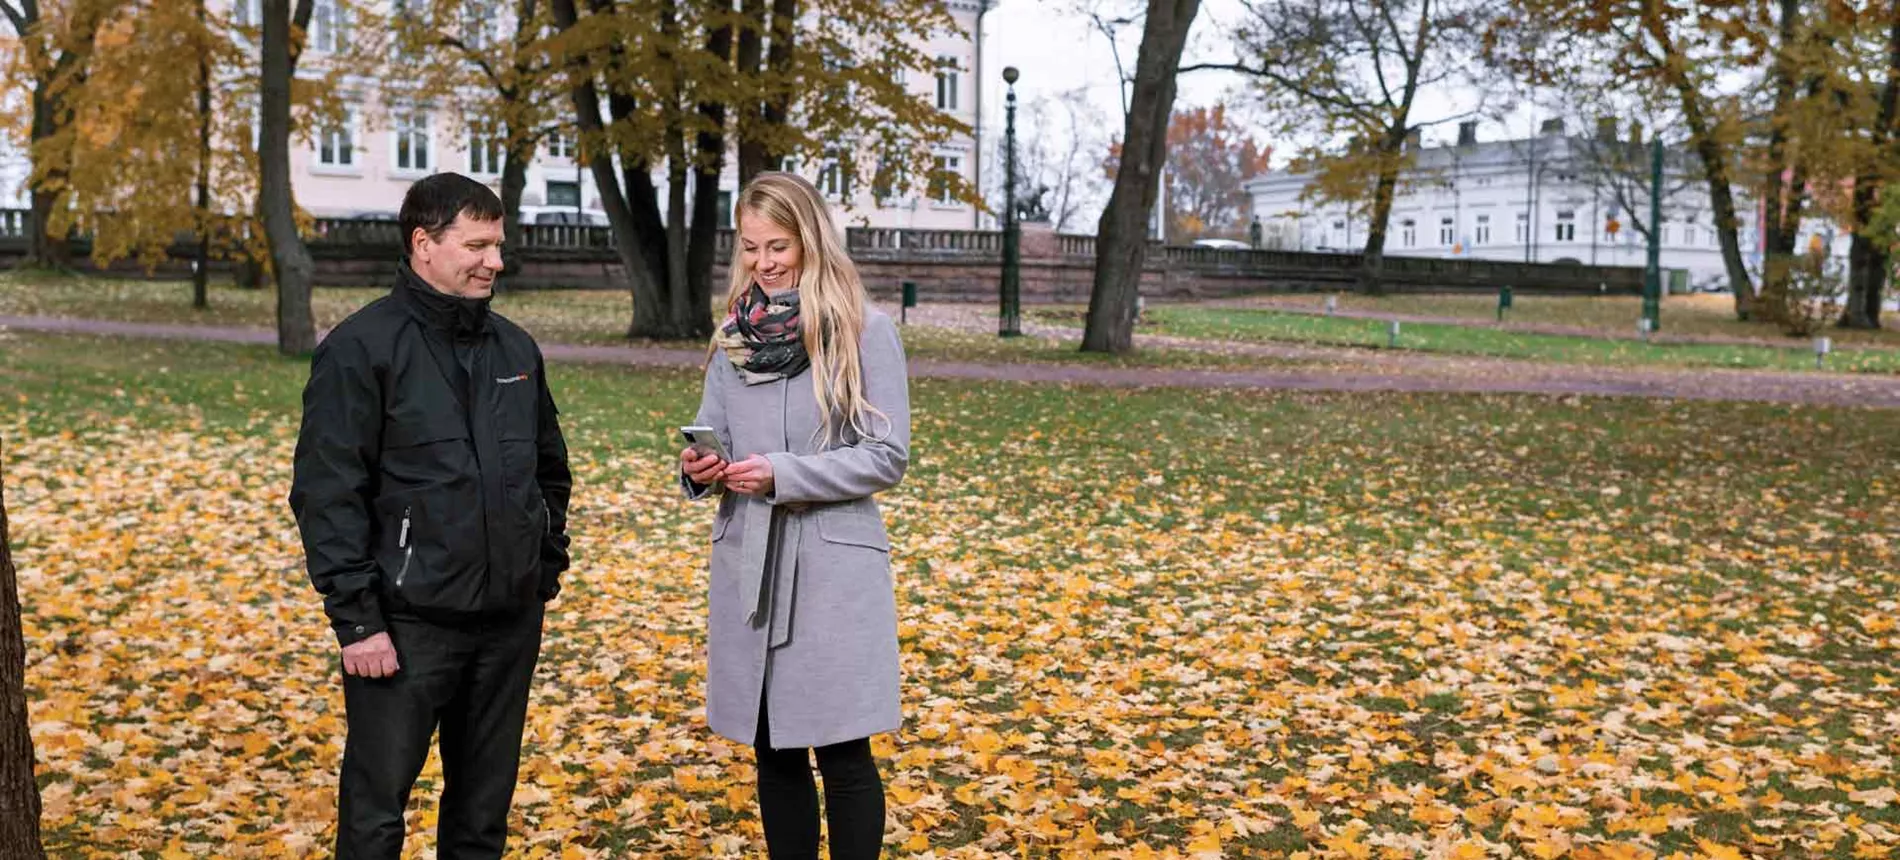 Porin kaupungin it-päällikkö Kari Kirsi ja yhdyskuntasuunnittelija Kirsi-Mari Viljanen seisovat syksyisessä puistossa Porissa.